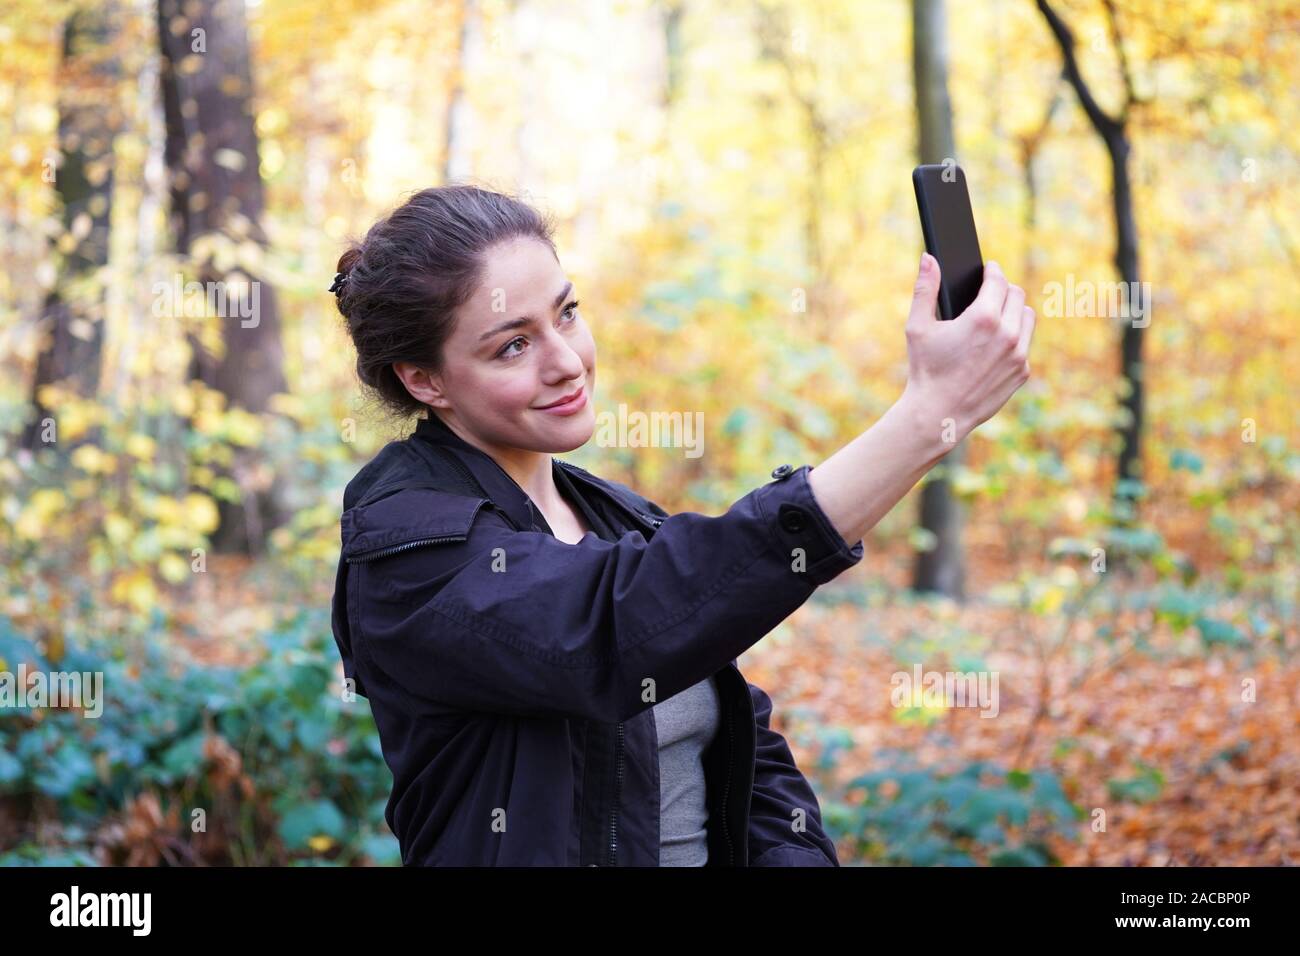 Junge Frau in ihrem 20s, selfie Selbstportrait mit Ihrem Smartphone Mobiltelefon im Herbst Spaziergang im Wald Stockfoto